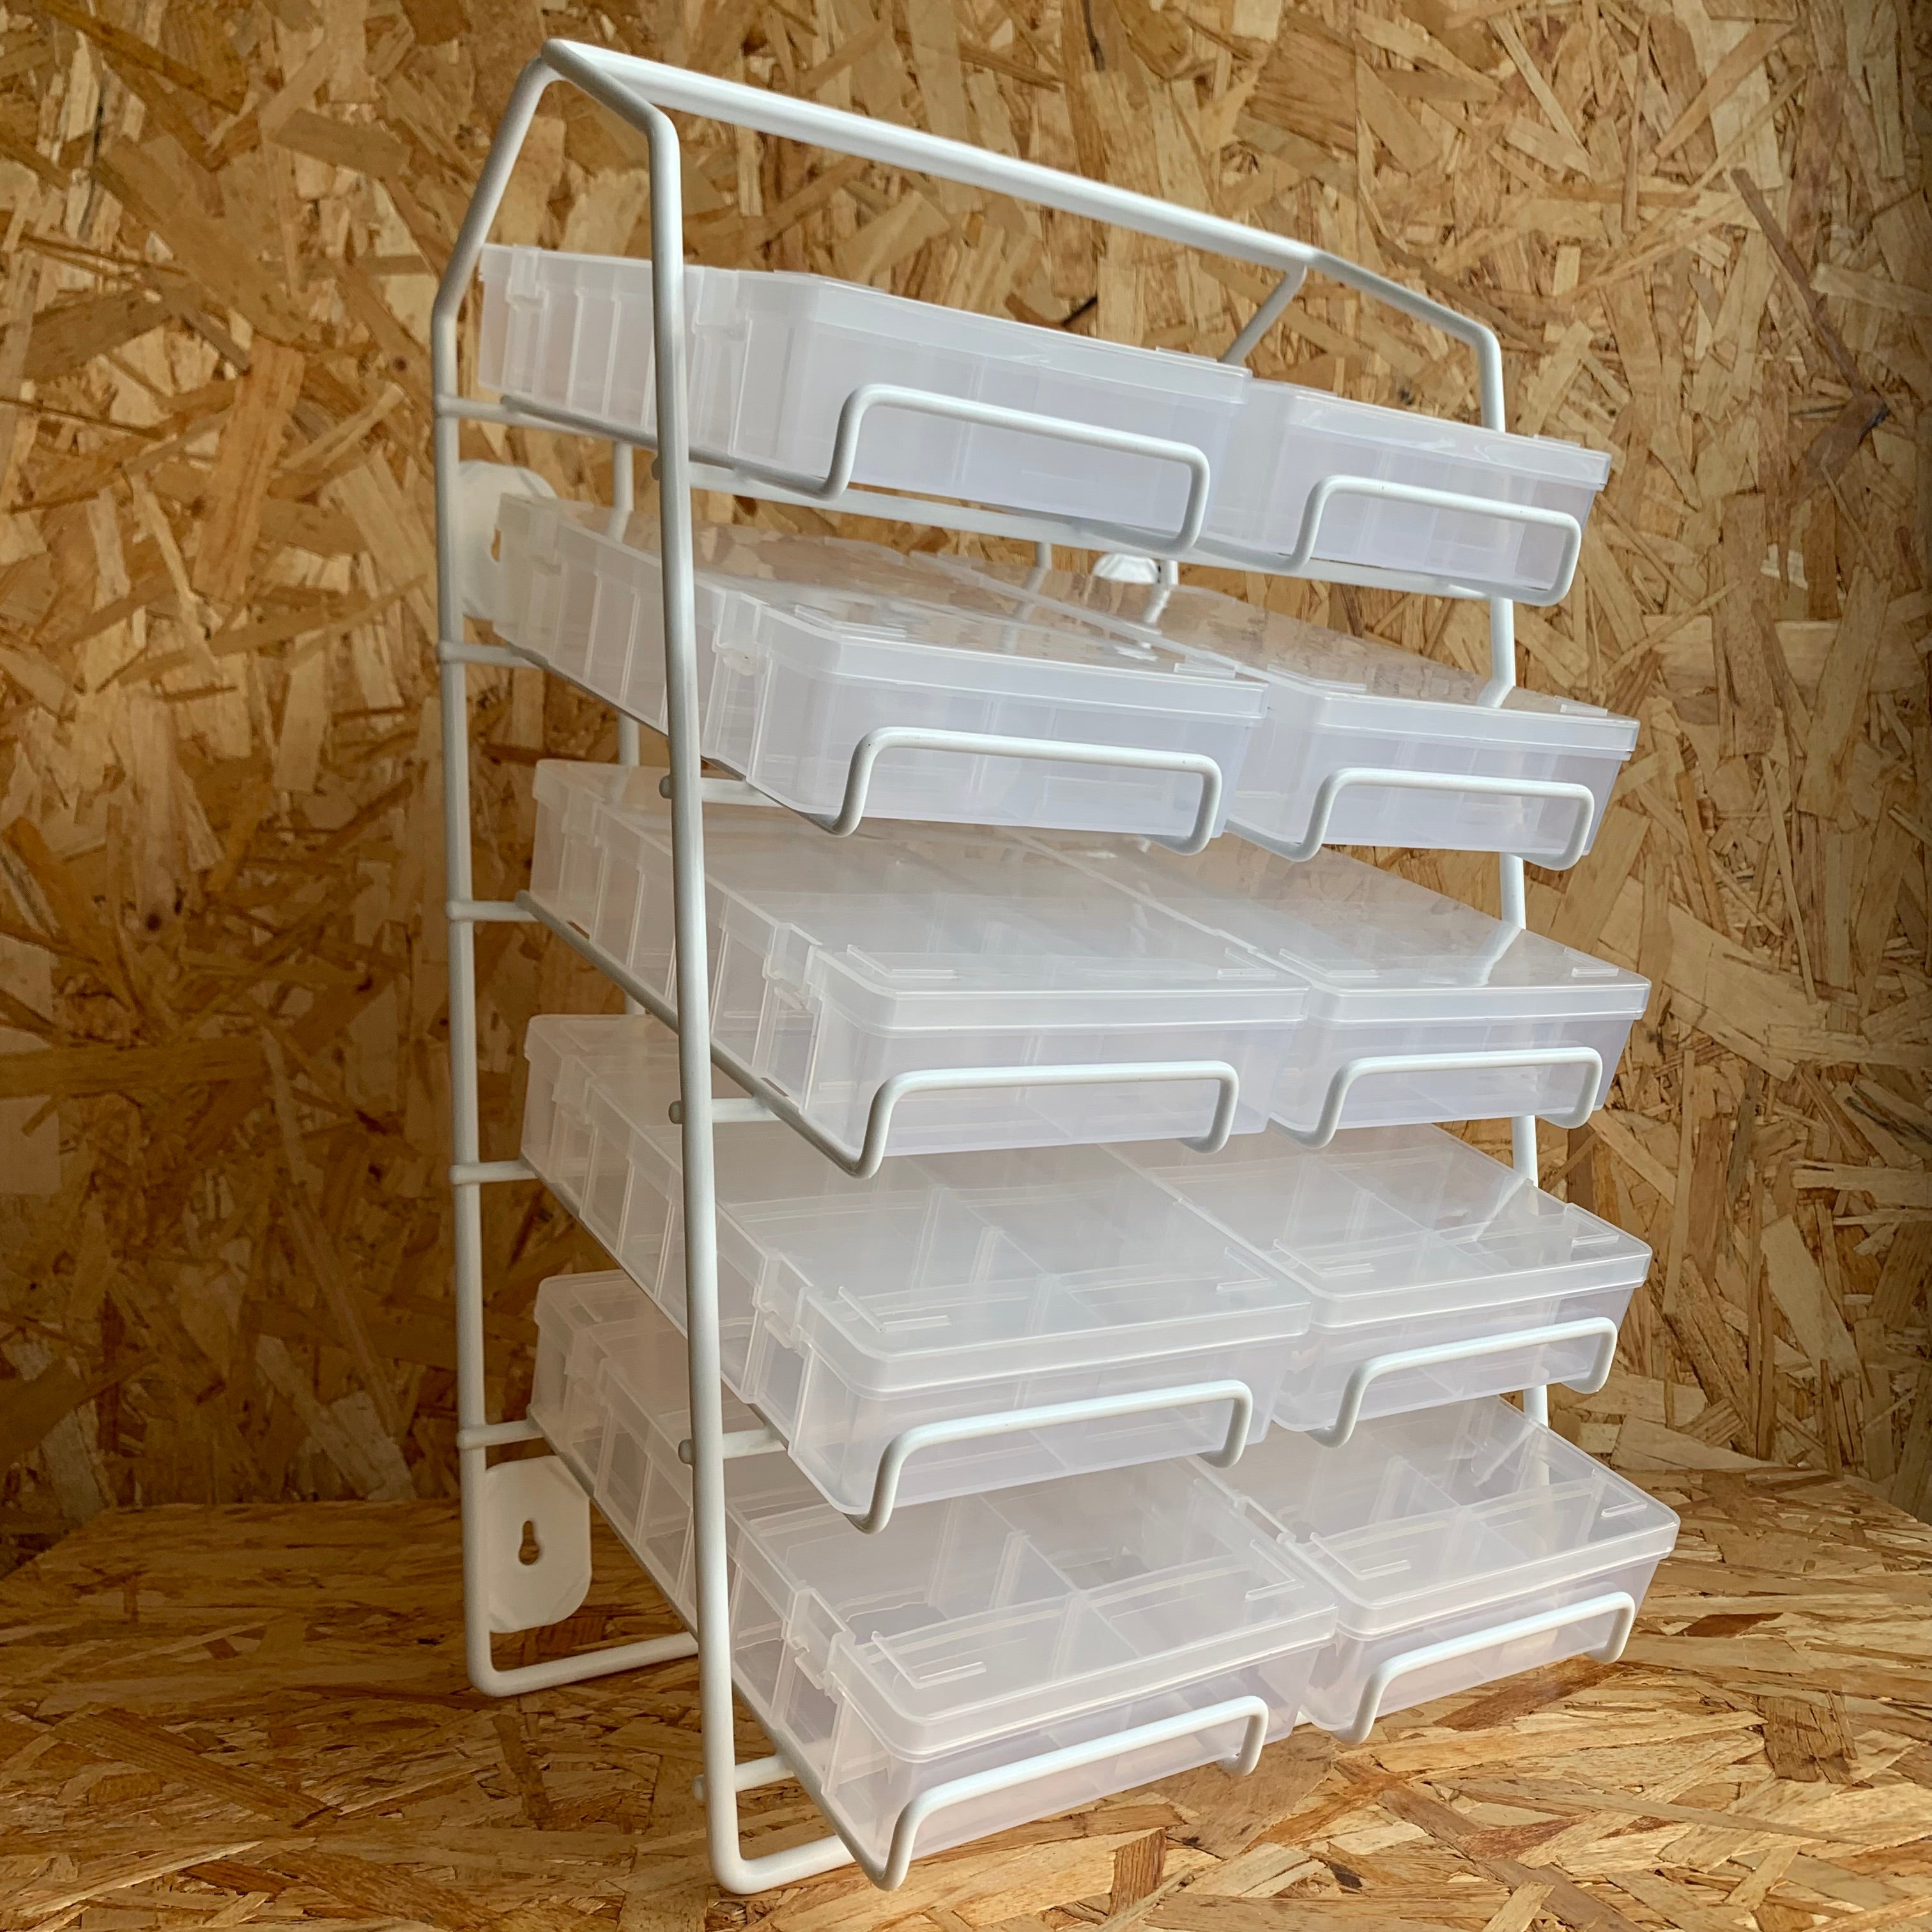 Plastic Storage Box | 8 Compartments - 